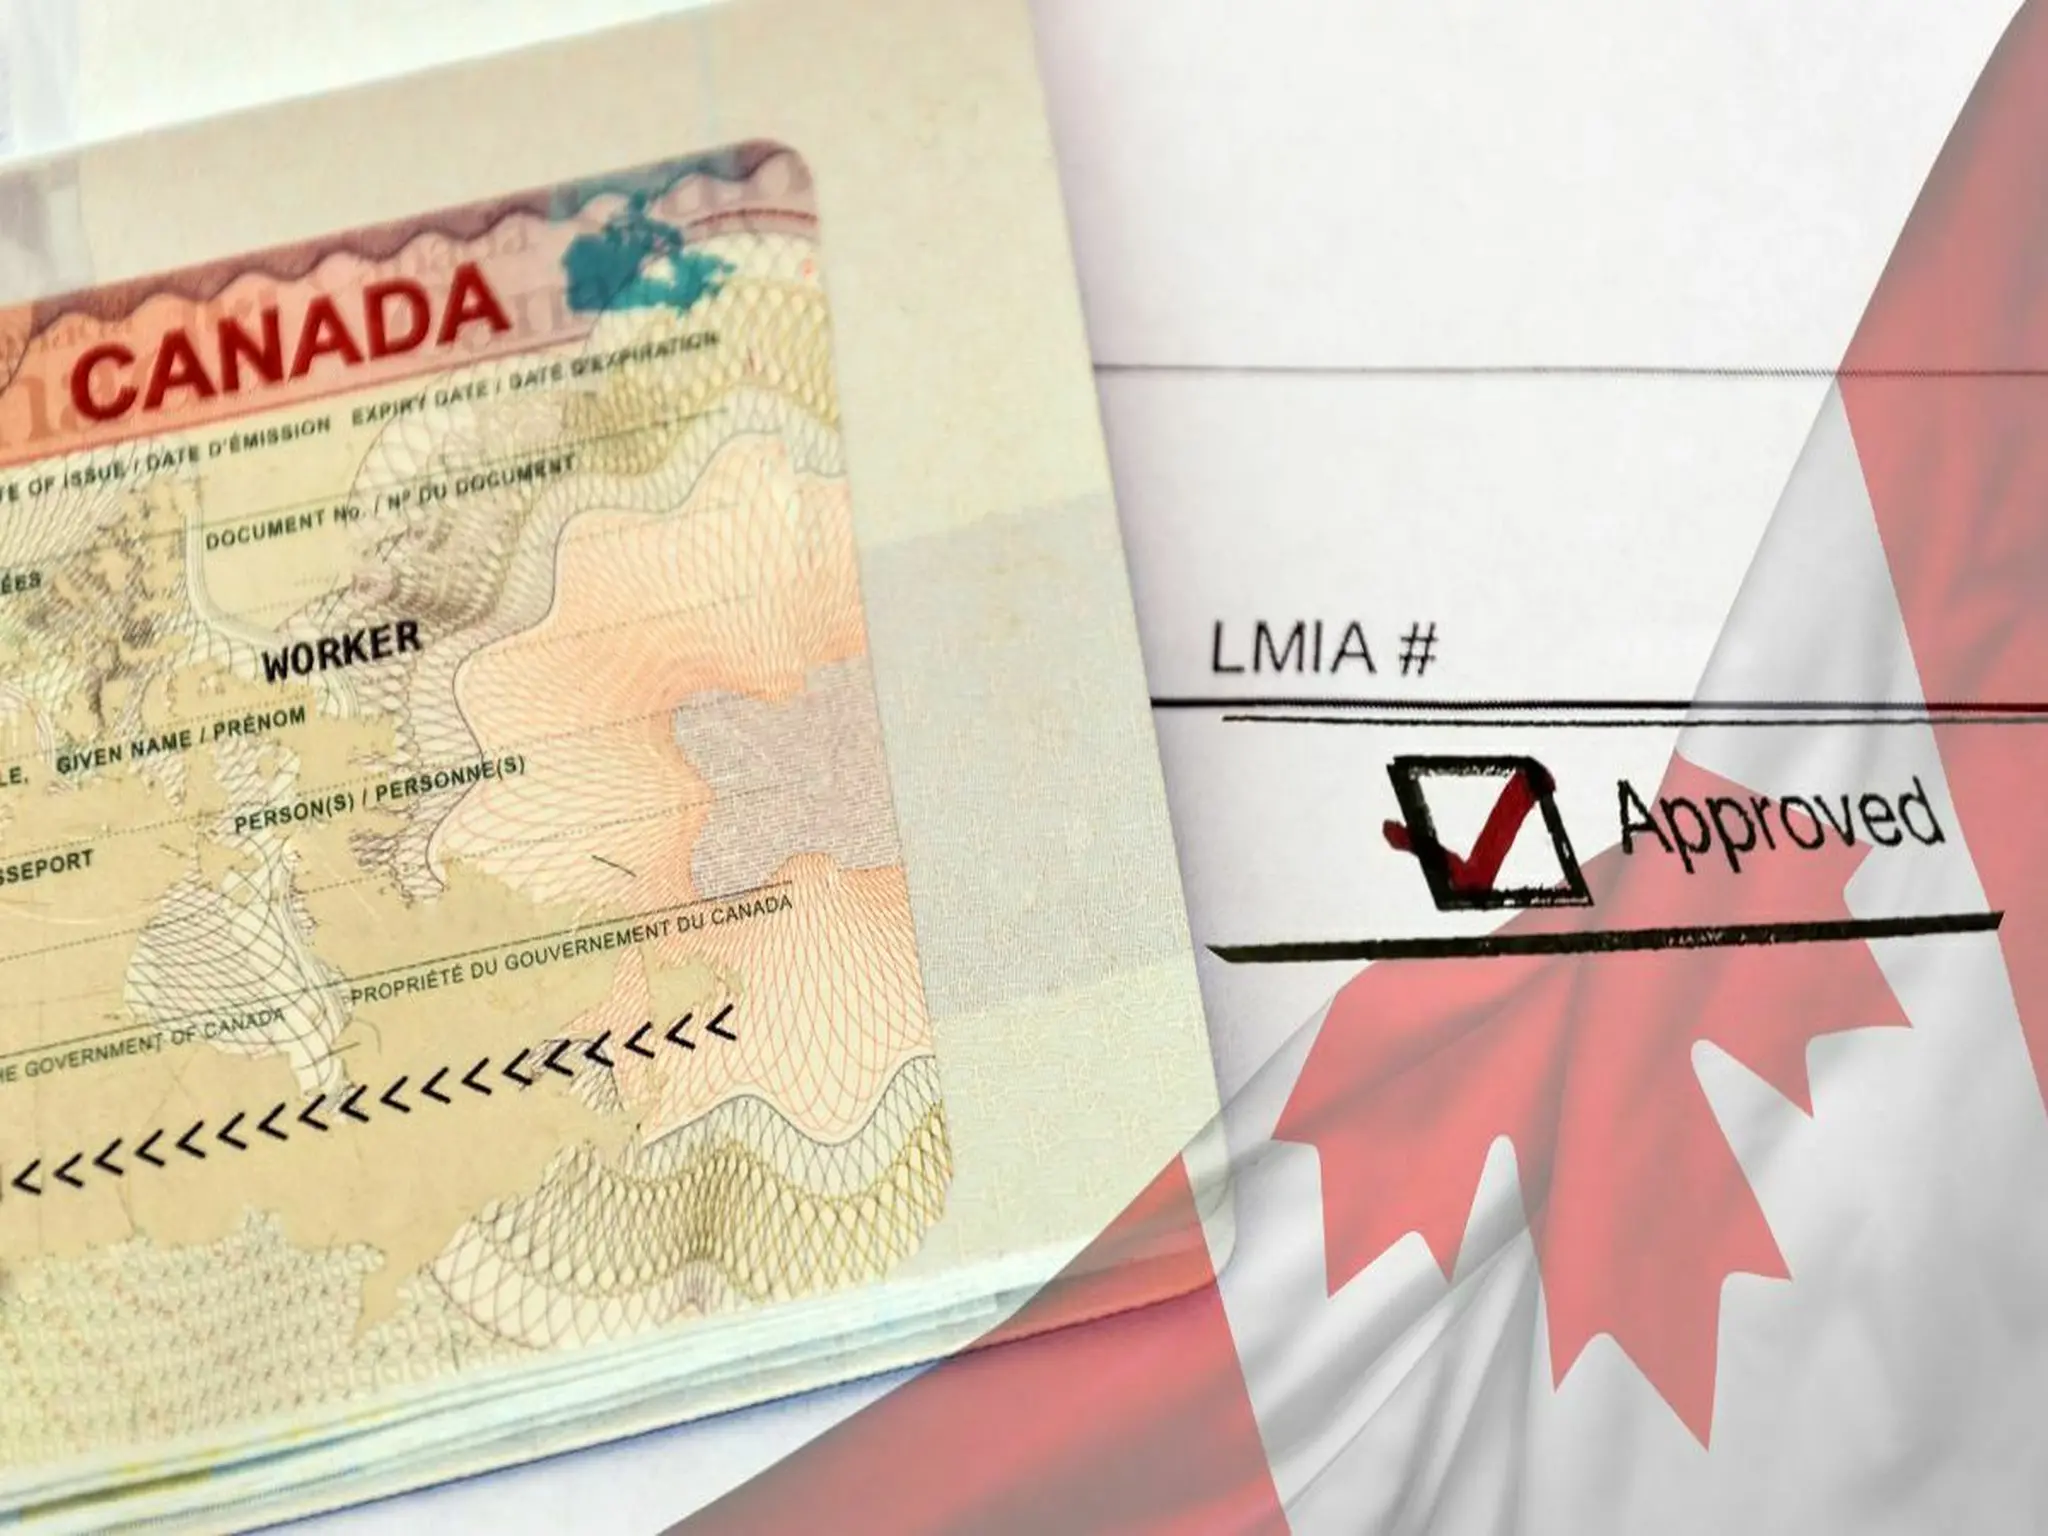 كندا توضح الفرق بين تأشيرة زيارة العمل وتصريح العمل الكندي